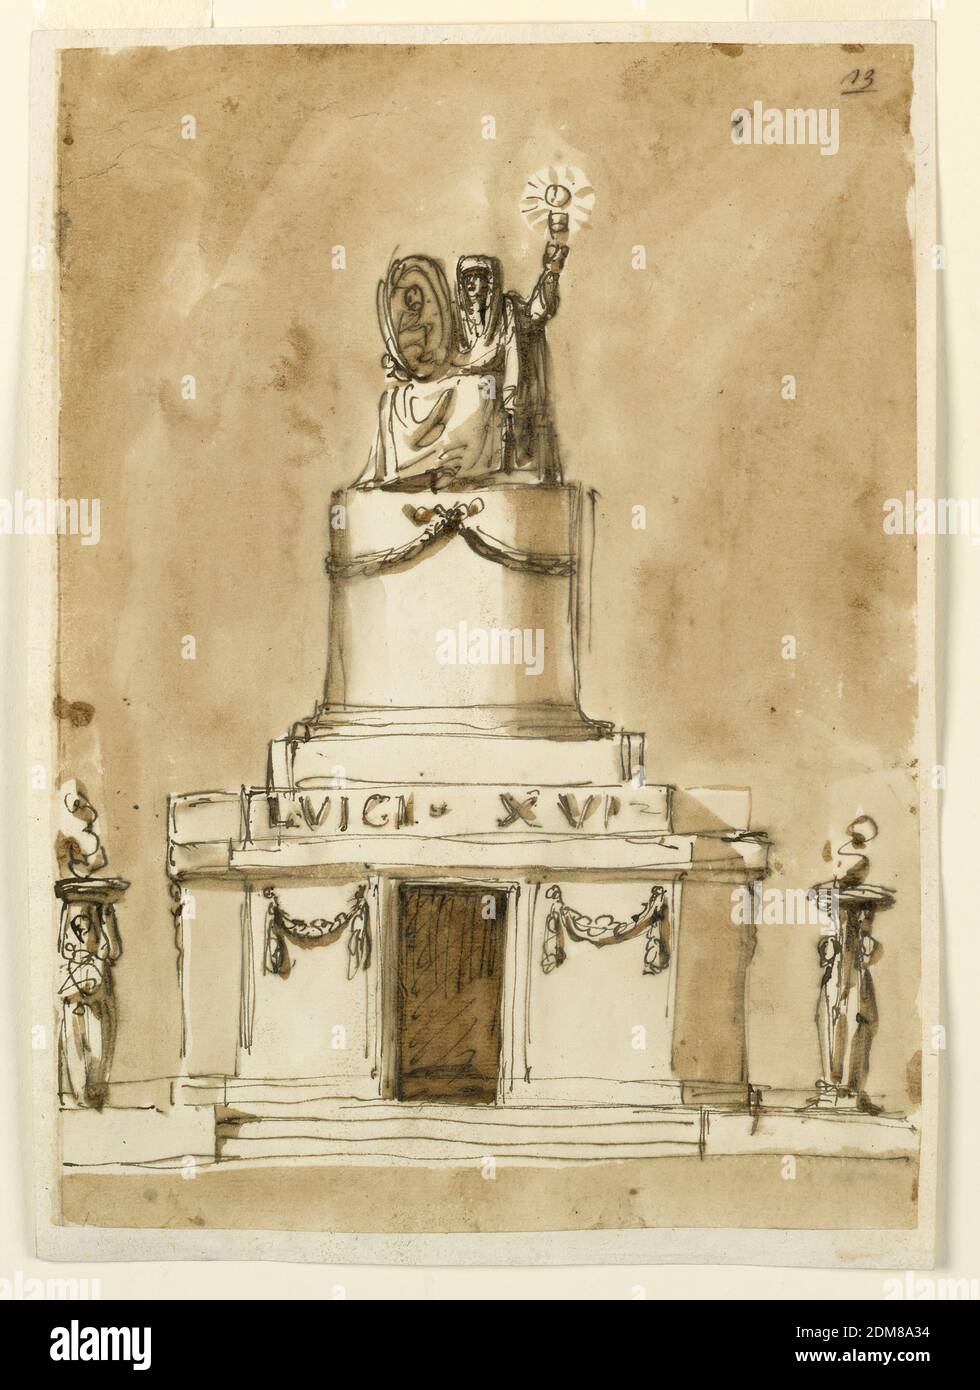 Begräbnisdekorationen für König Ludwig XVI. Von Frankreich, Giuseppe Barberi, italienisch, 1746–1809, Feder und braune Tinte, Pinsel und braune Wäsche auf liniertem, cremefarbenem Büttenpapier, EINE Variation von 1938-88-1302. Die Flammen brennen in Schüsseln, die in alternativen Andeutungen links von den erhobenen Armen einer Frau getragen werden, rechts von einem Pfosten, der in seinem unteren Teil von stehenden Figuren umragt wird. Die Paneele neben der Tür sind mit einem Festoon verziert. Ohne markante Gegenstände im Innenraum. Die Figur oben ist eine Variation von 1938-88-1301, ohne den Engel., Rom, Italien, 1793, Architektur, Zeichnung Stockfoto